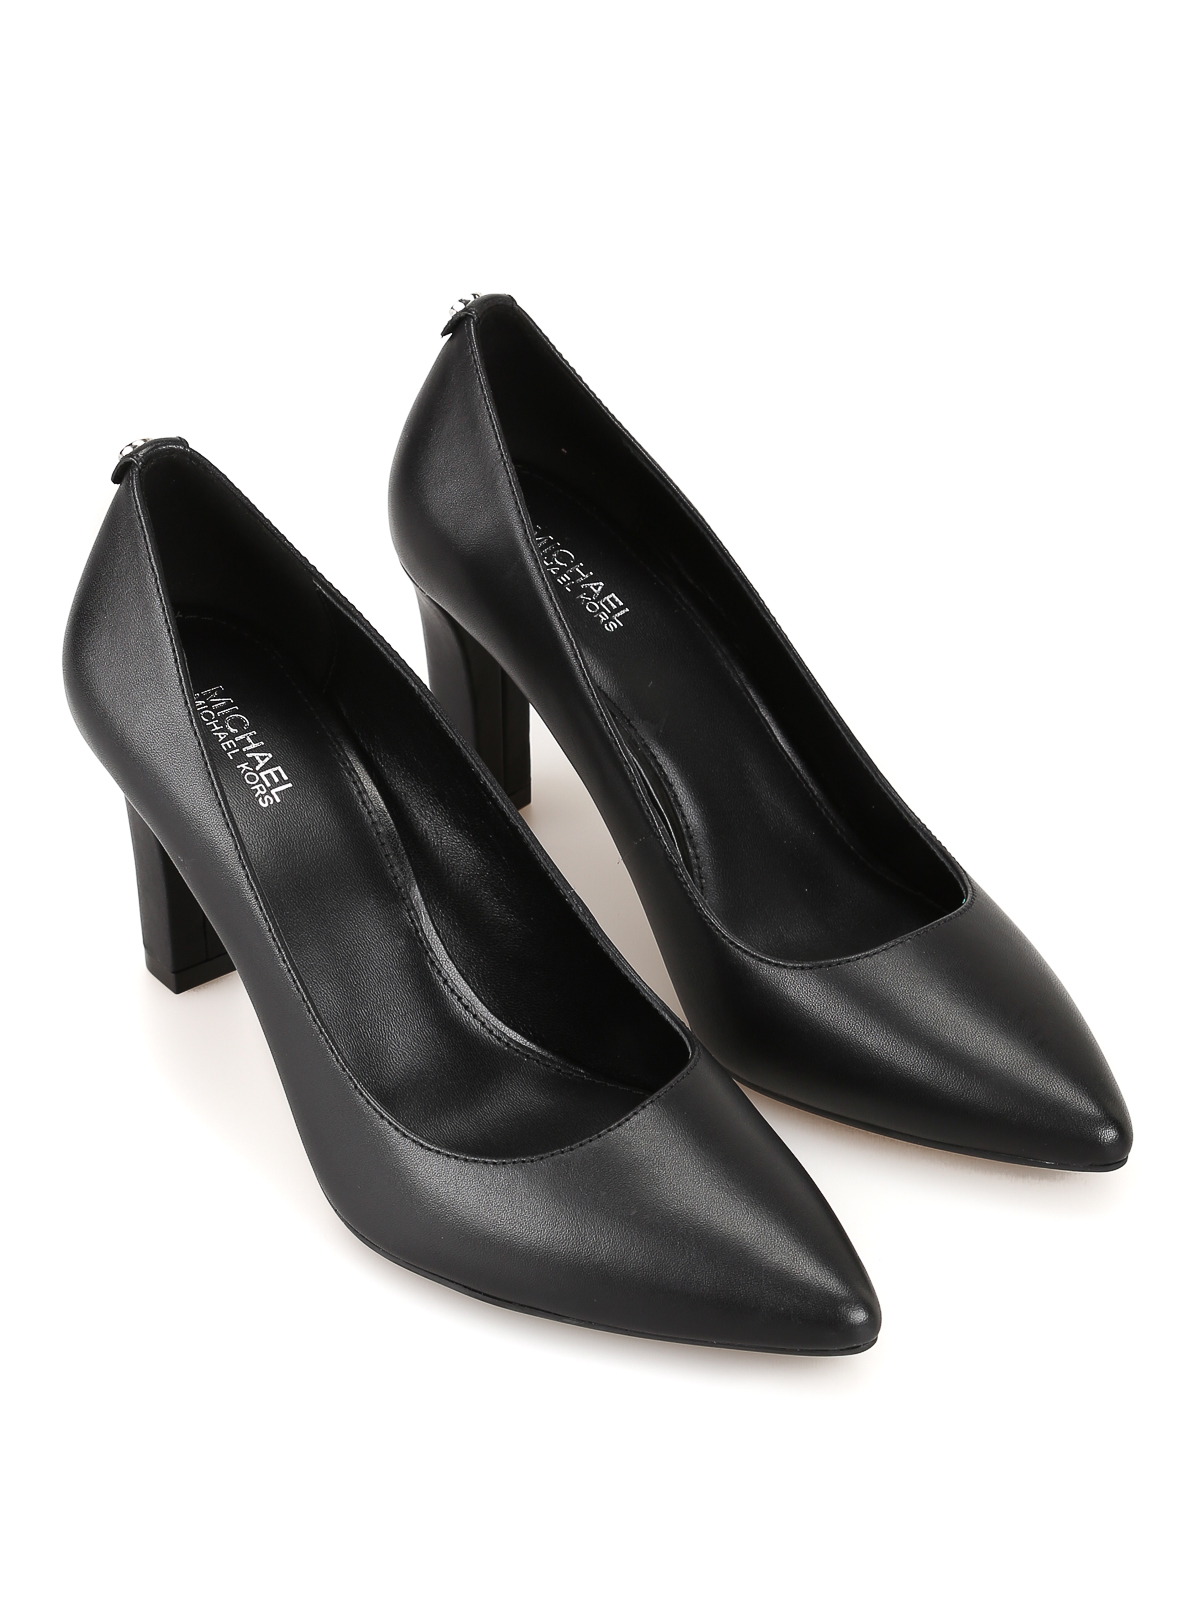 Court shoes Michael Kors - Abbi Flex pumps - 40F7ABMP1L001 